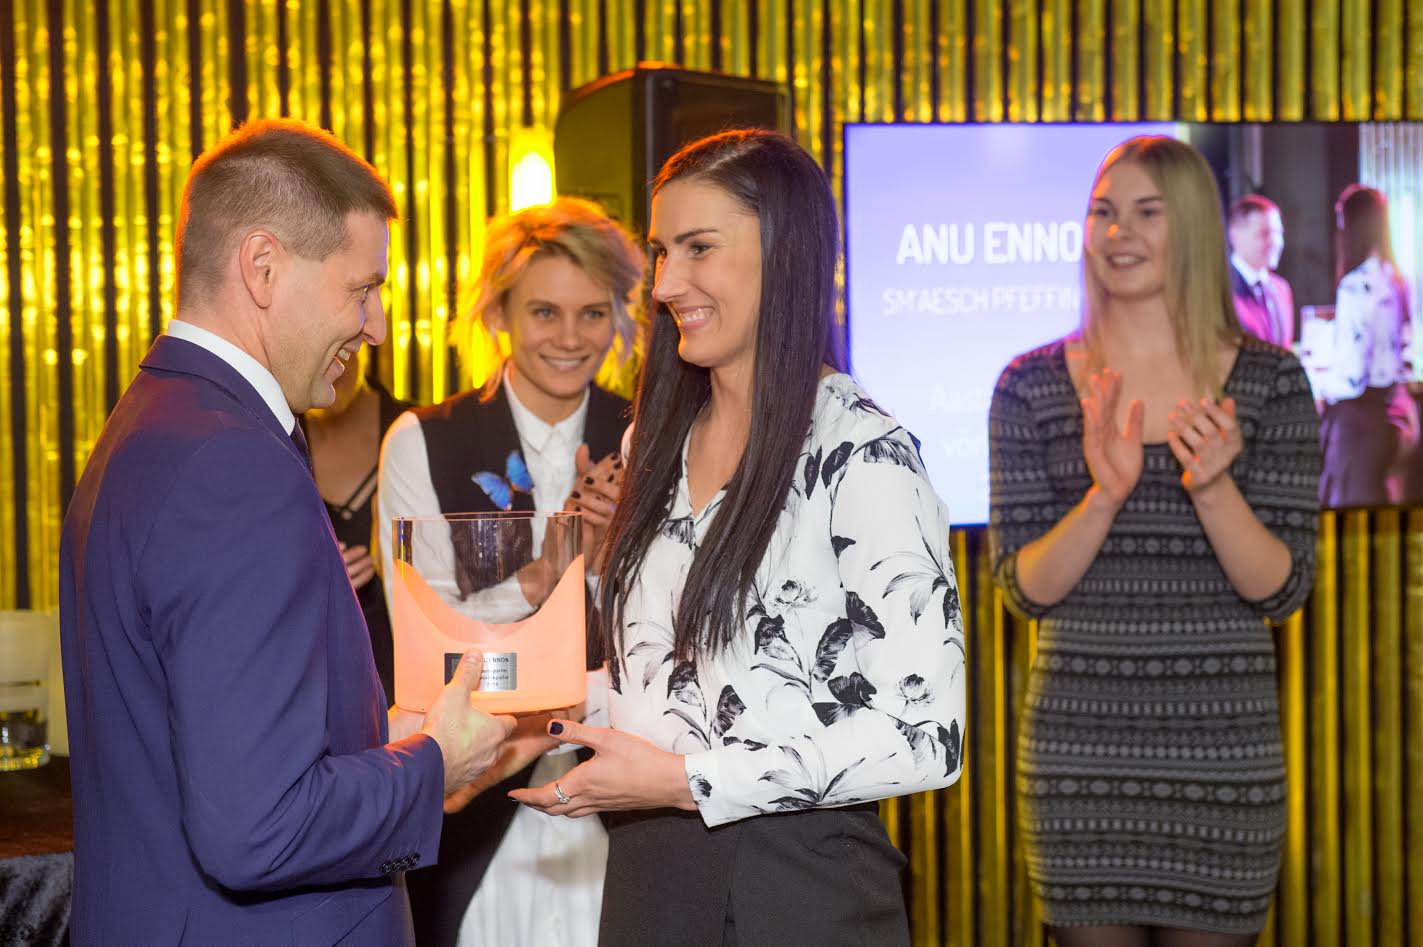 Aasta naisvõrkpalluri tiitli võitnud Anu Ennokit õnnitleb Eesti Võrkpalli Liidu president Hanno Pevkur. FOTO: Raigo Pajula